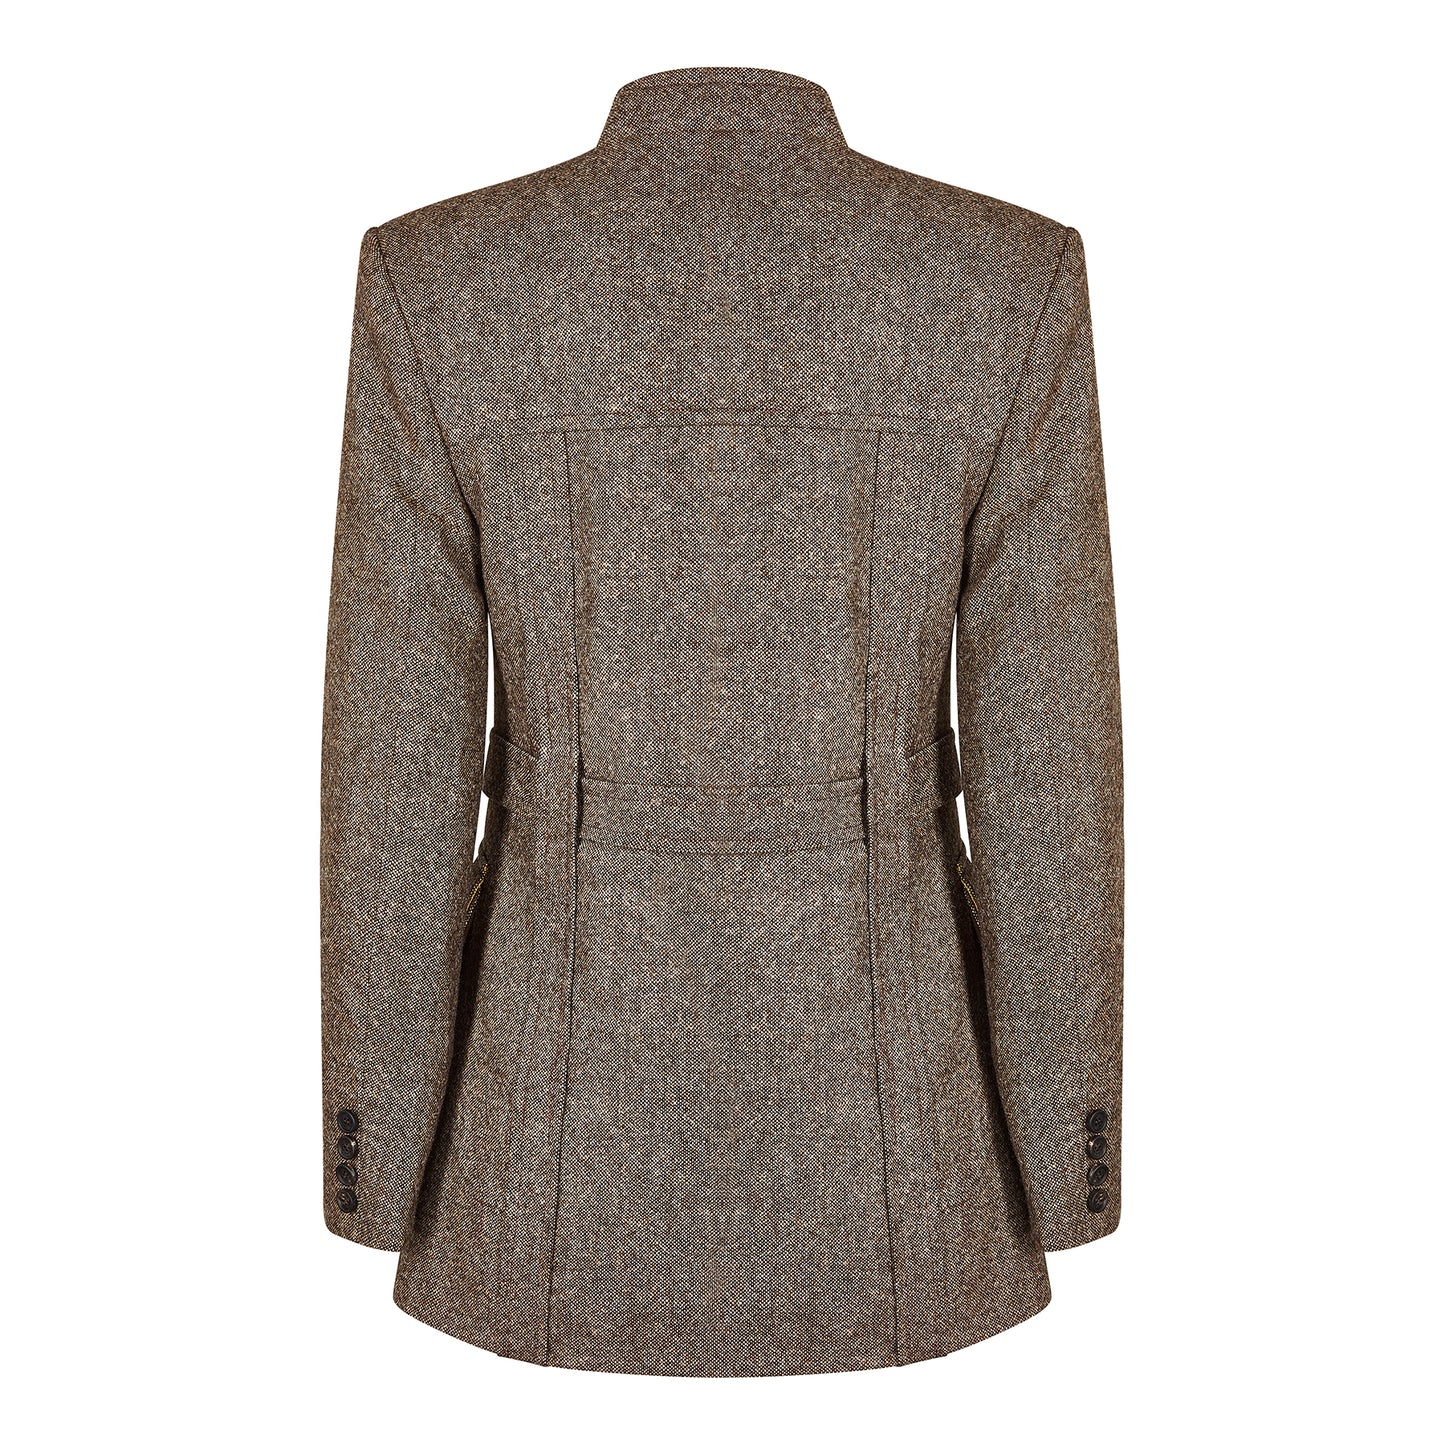 Donegal Tweed Norfolk Jacket